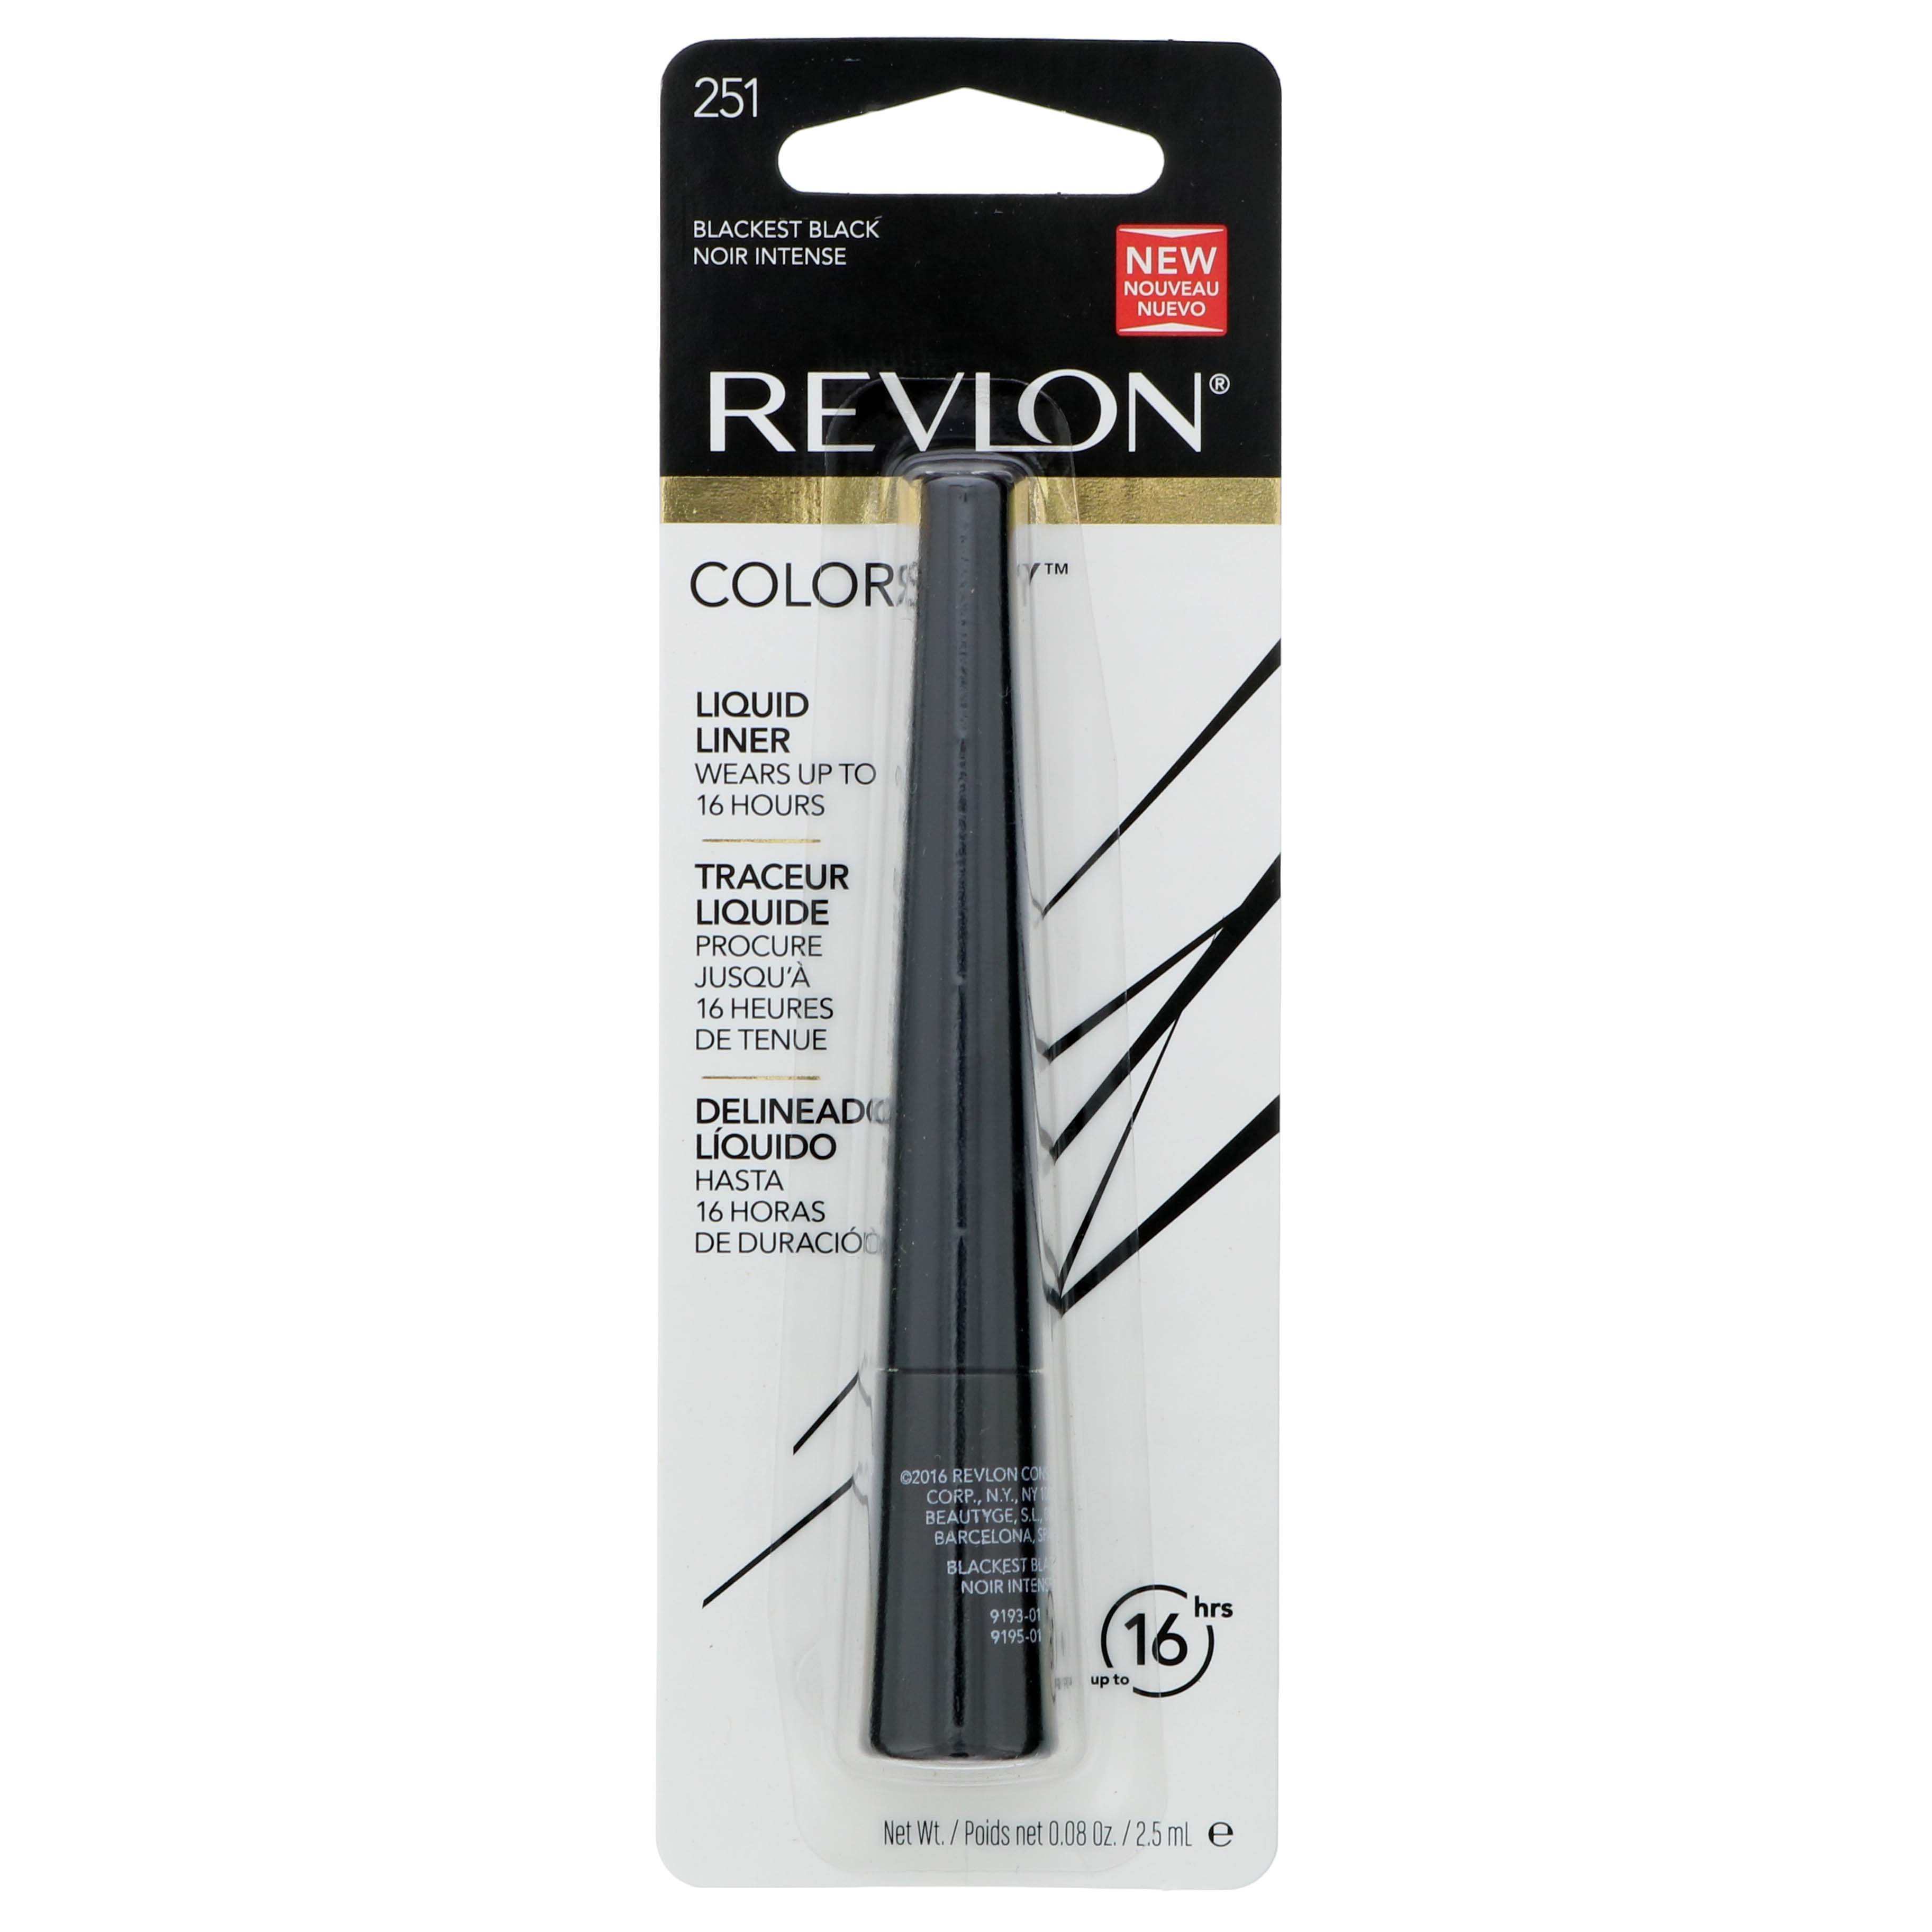 Revlon Liquid Blackest Black - Eyeliner at H-E-B